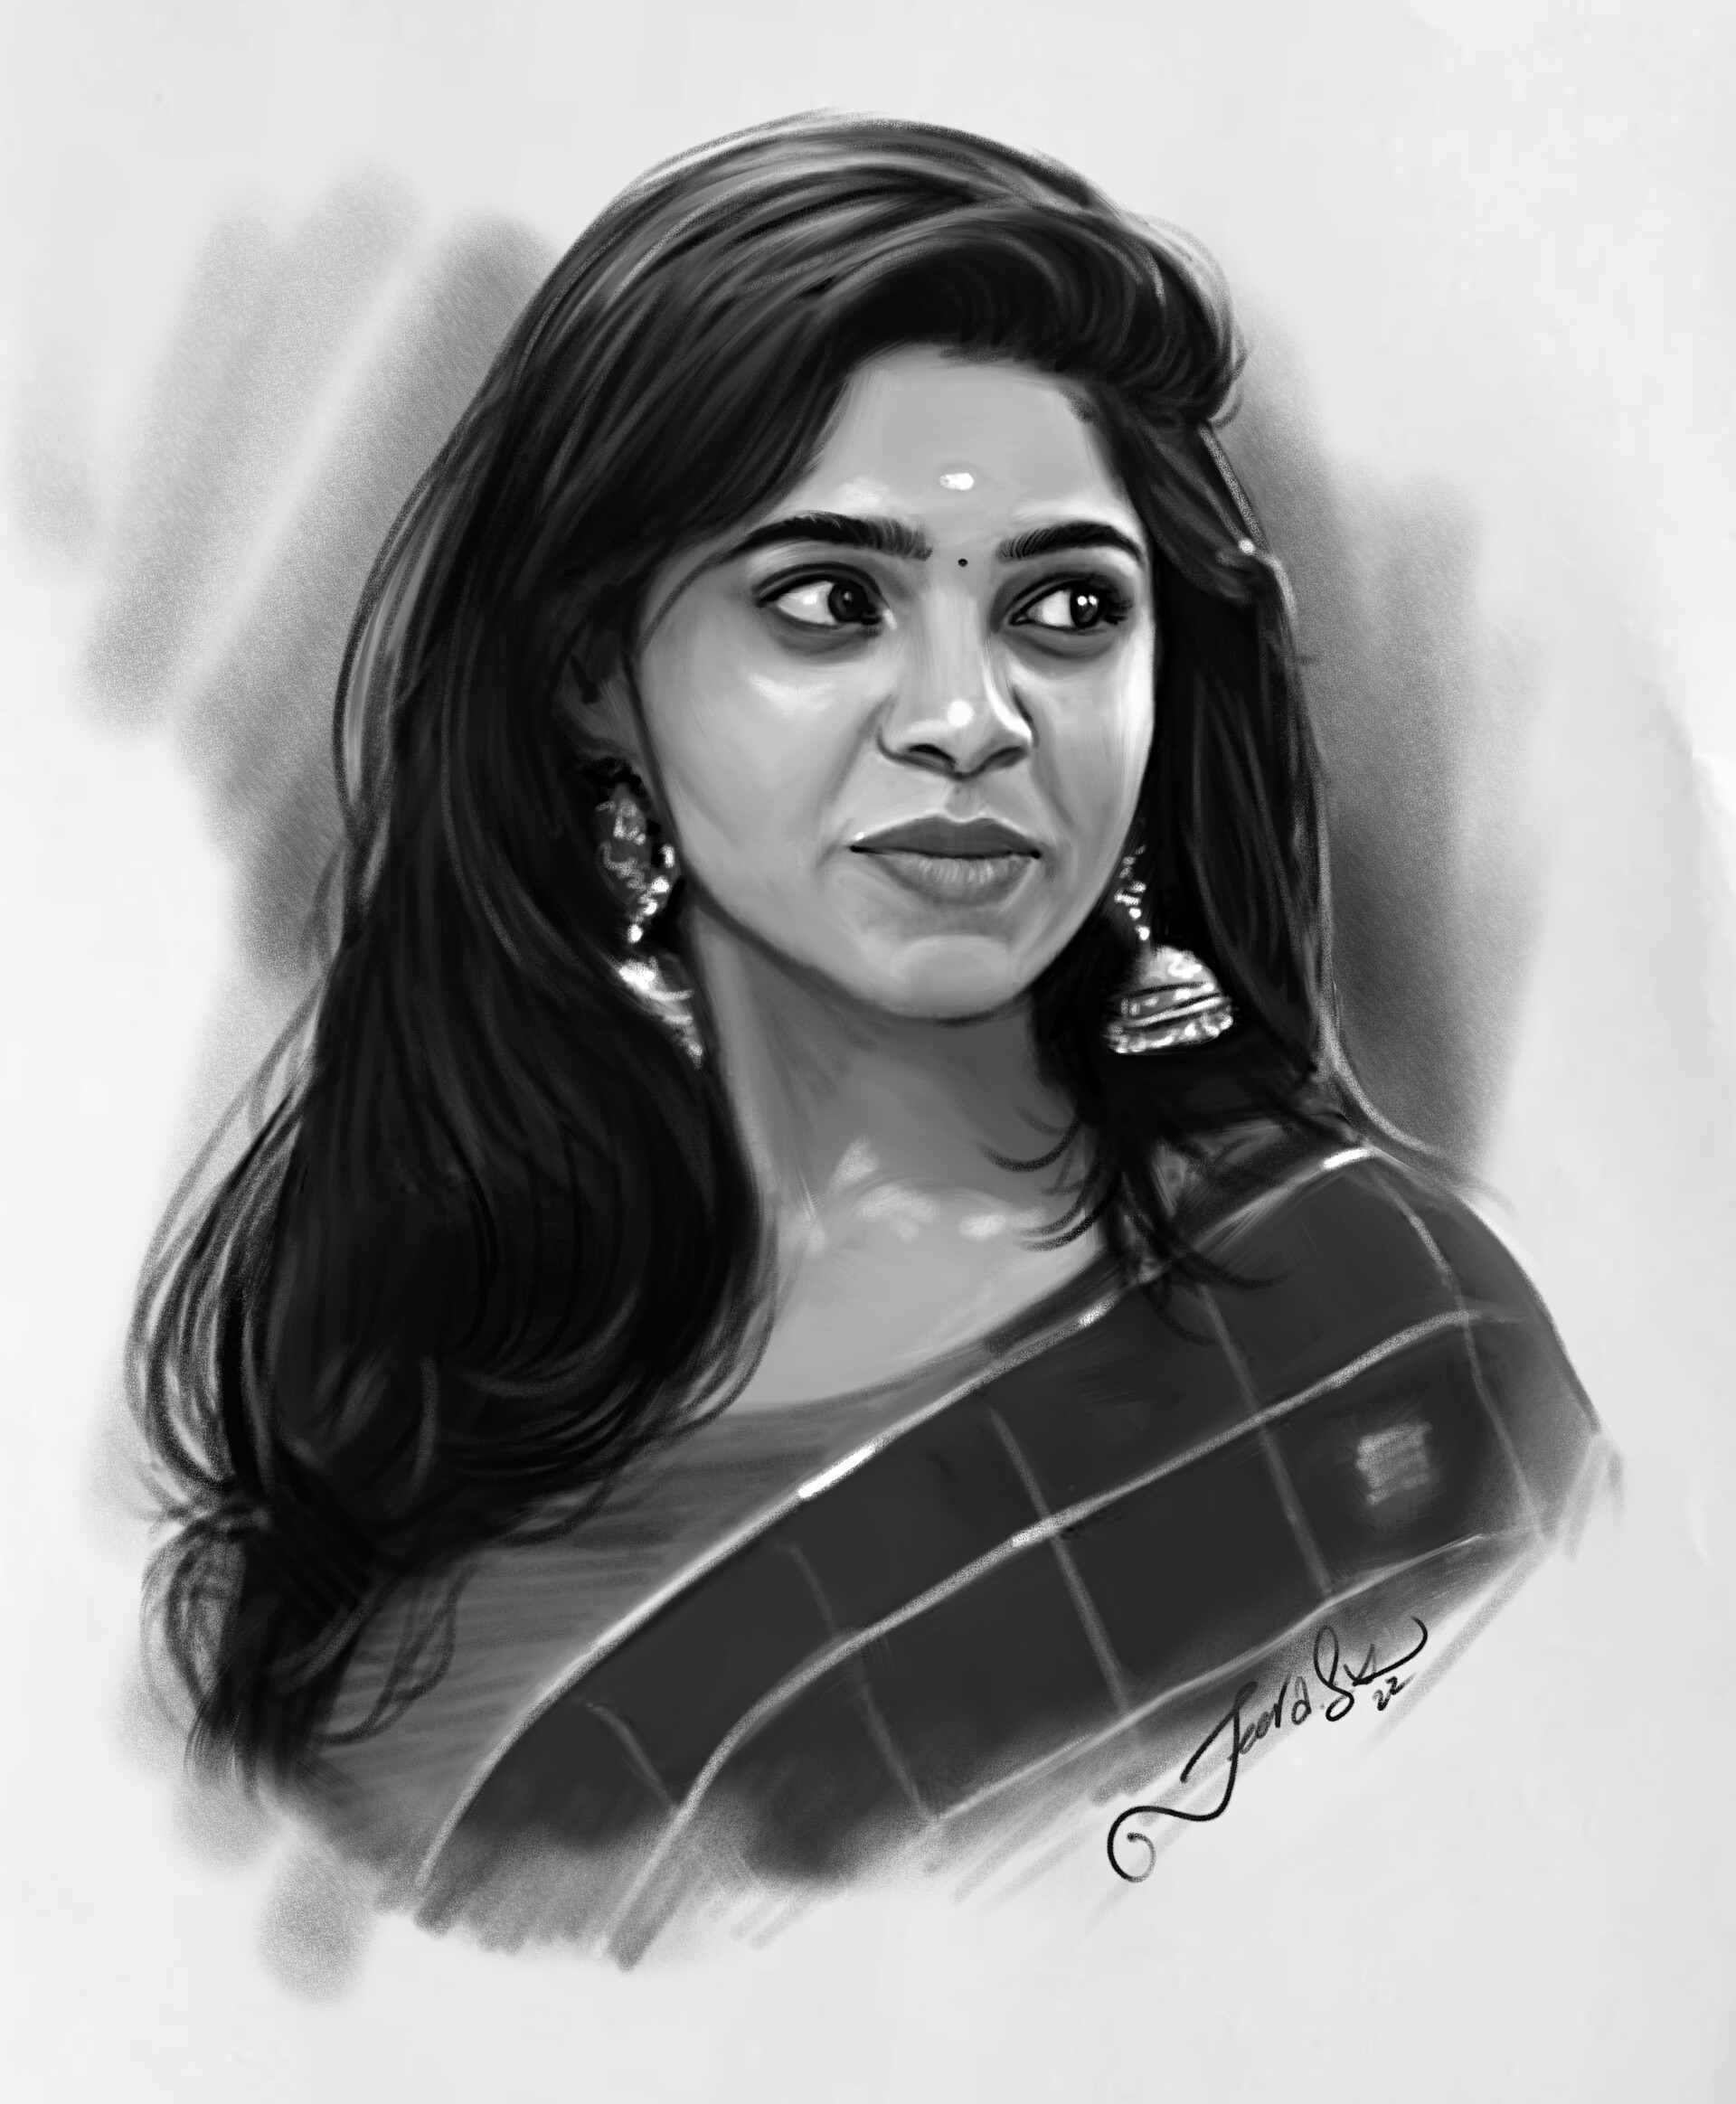 ArtStation  Actress Keerthy Suresh Pencil Sketch 2022 KeerthySuresh  keerthysureshofficial pencildrawing